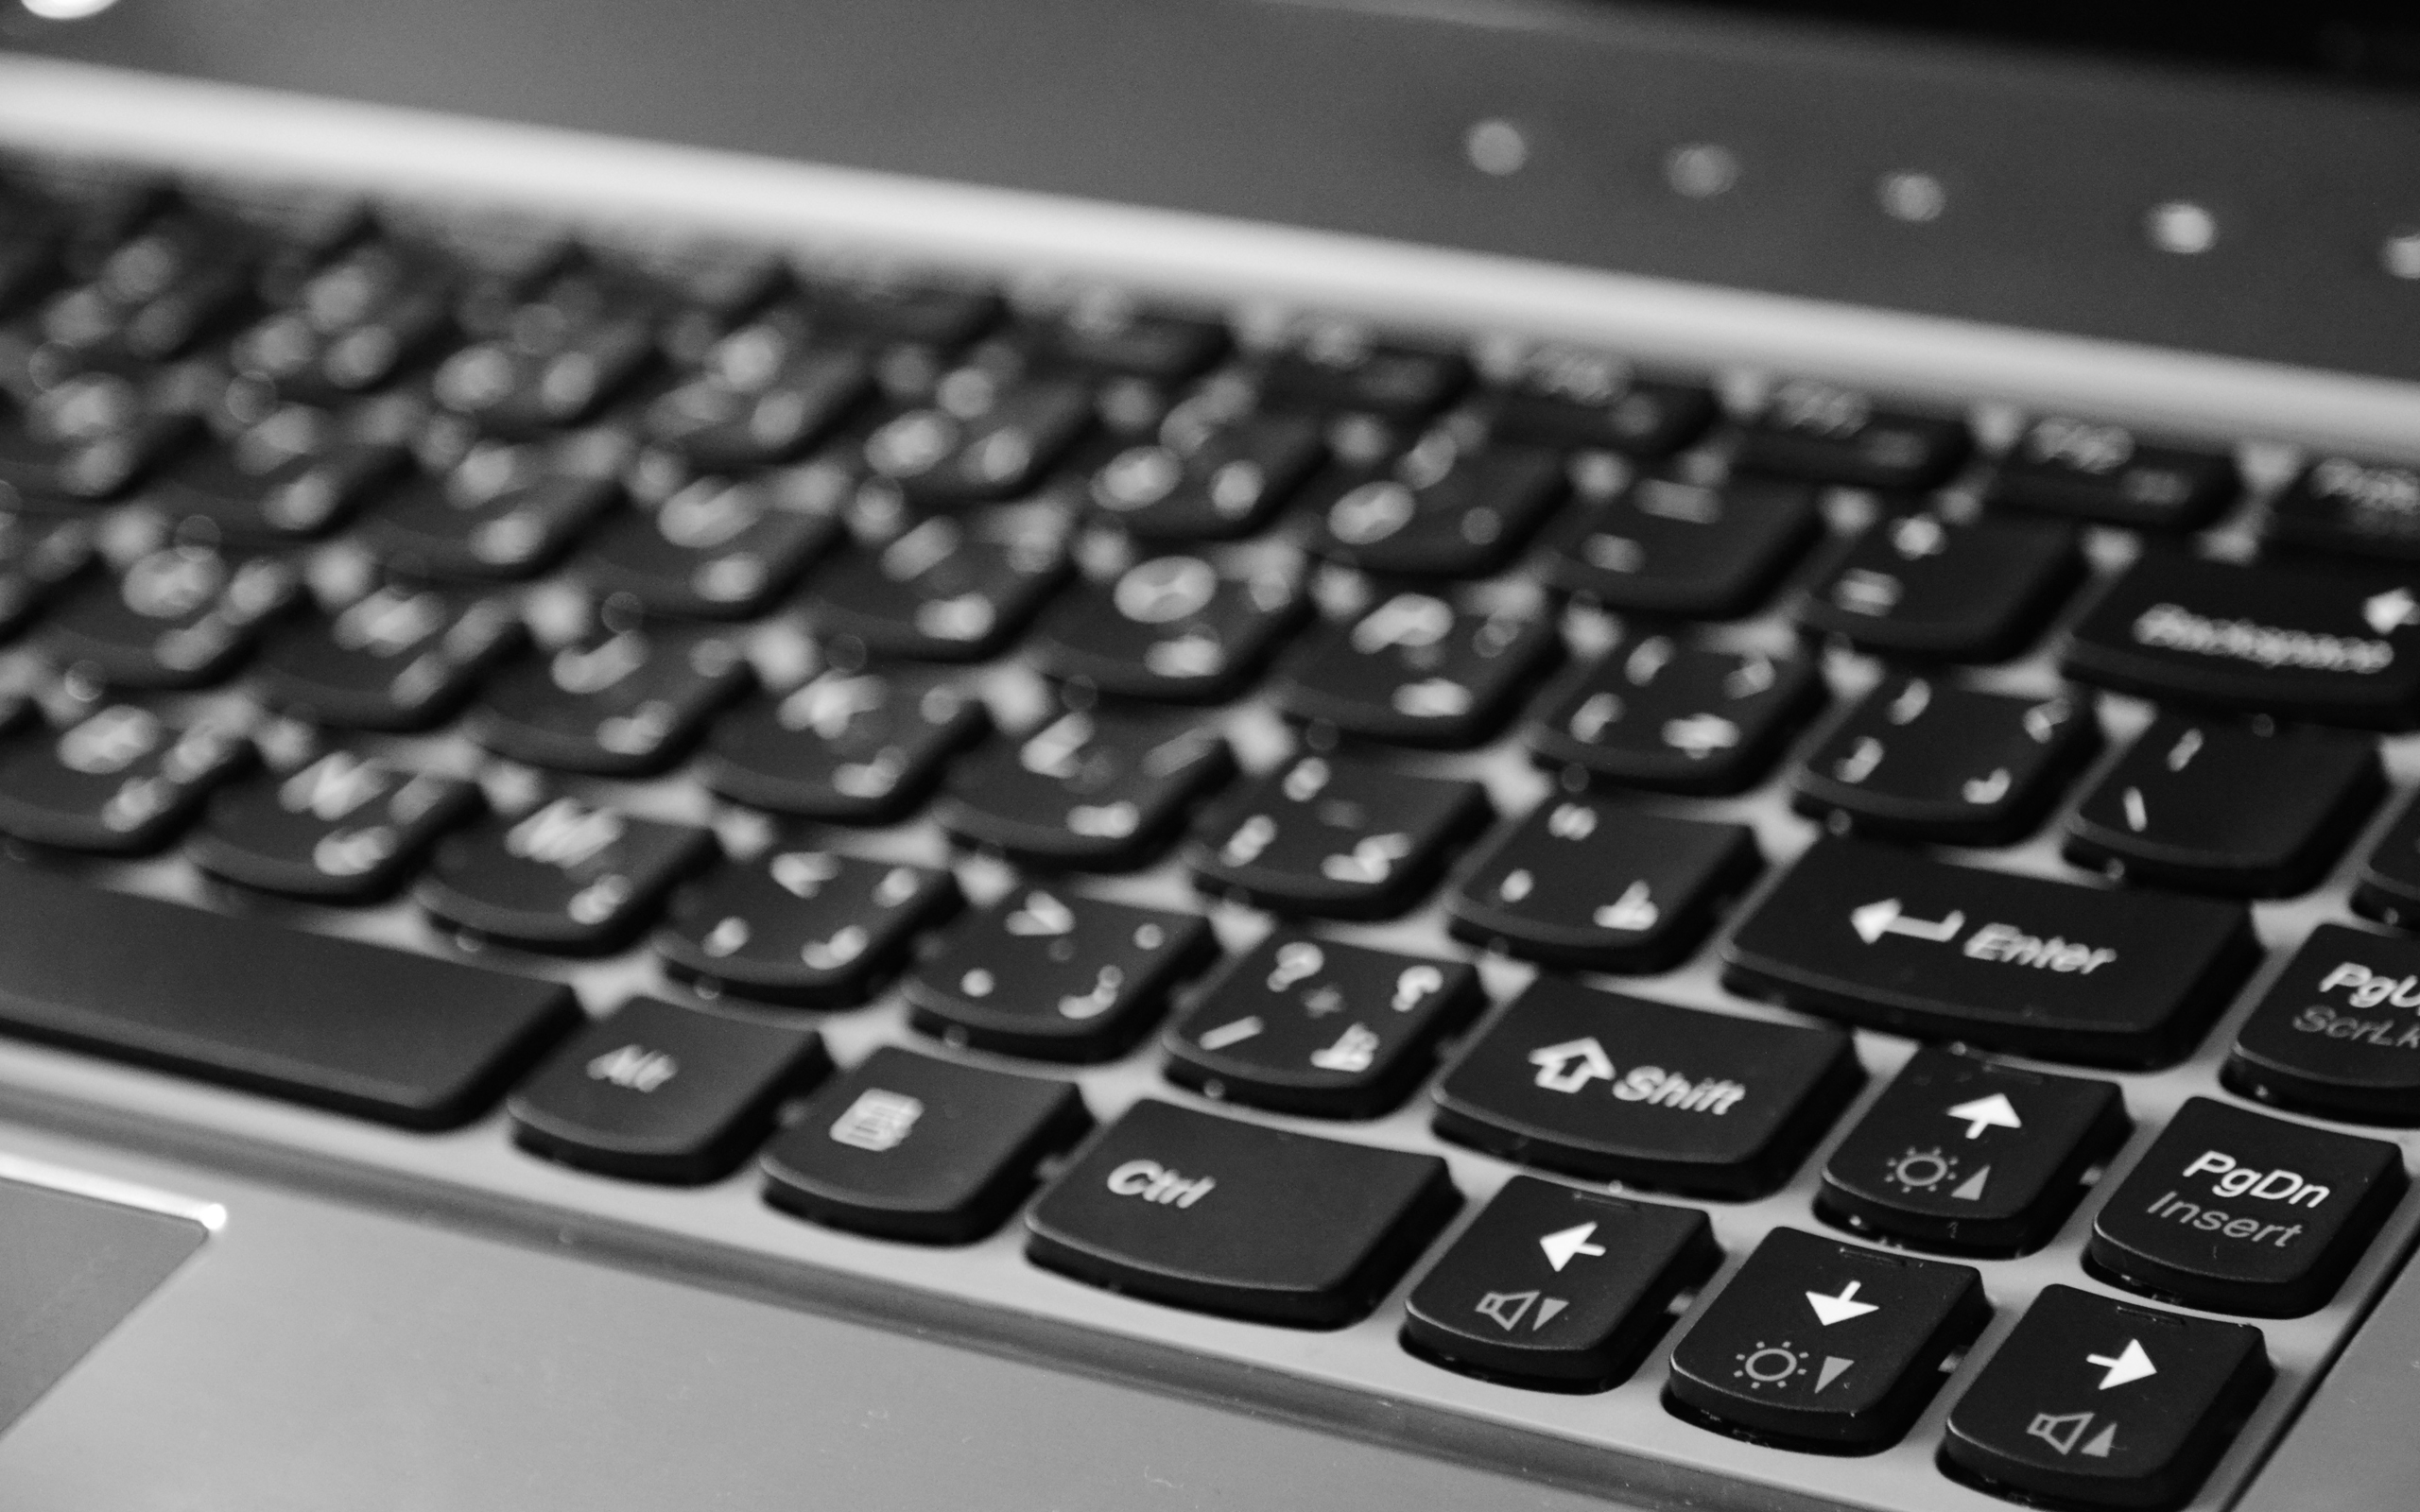 fond d'écran du clavier hd,clavier d'ordinateur,barre d'espace,dispositif d'entrée,la technologie,composant informatique